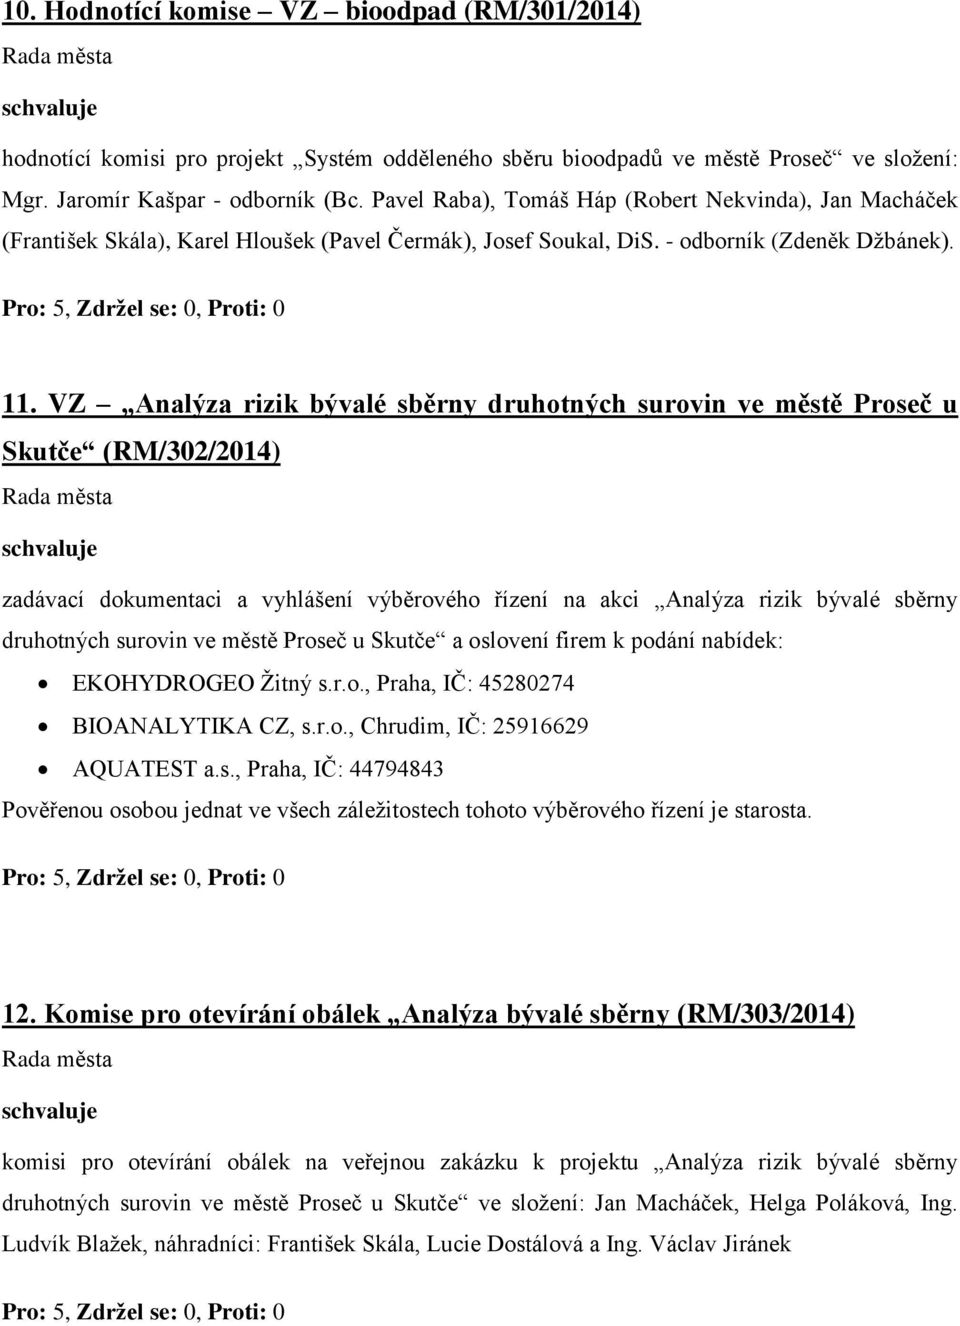 VZ Analýza rizik bývalé sběrny druhotných surovin ve městě Proseč u Skutče (RM/302/2014) zadávací dokumentaci a vyhlášení výběrového řízení na akci Analýza rizik bývalé sběrny druhotných surovin ve